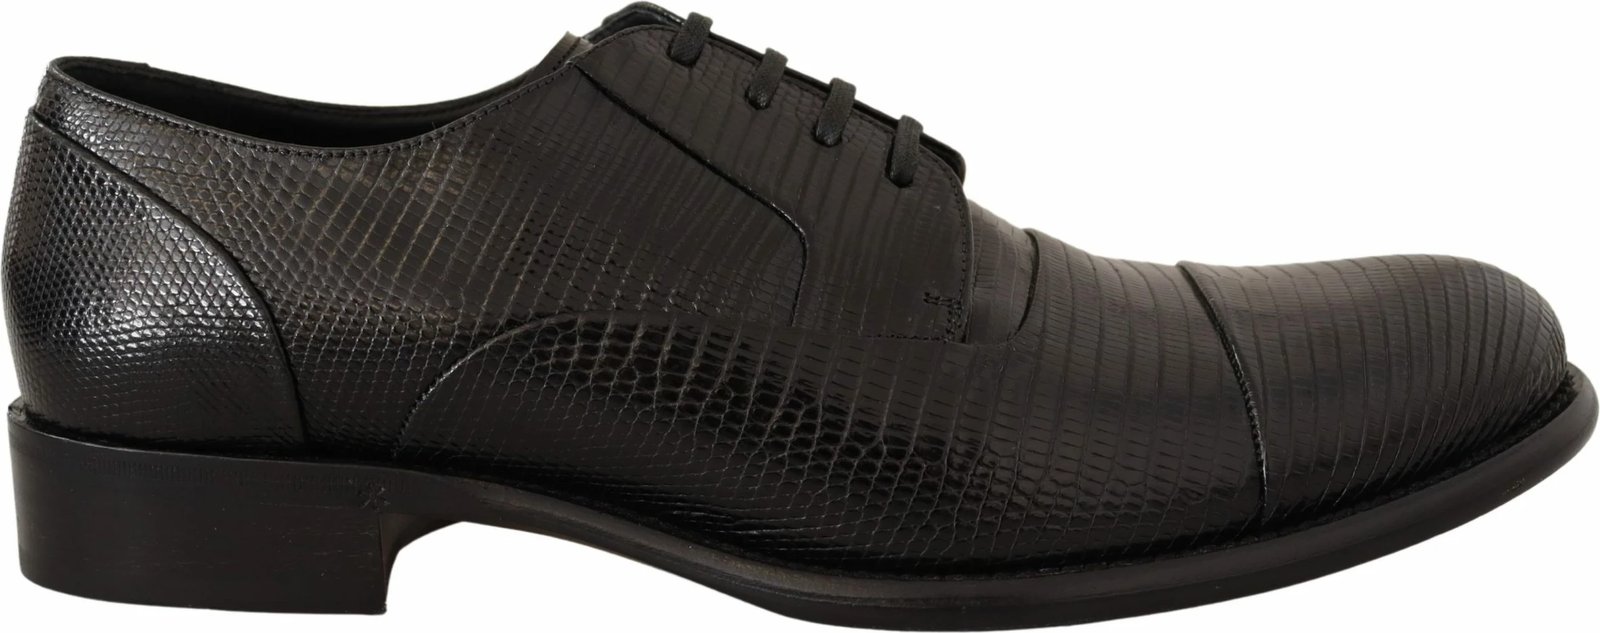 Këpucë për meshkuj Dolce & Gabbana, të zeza 